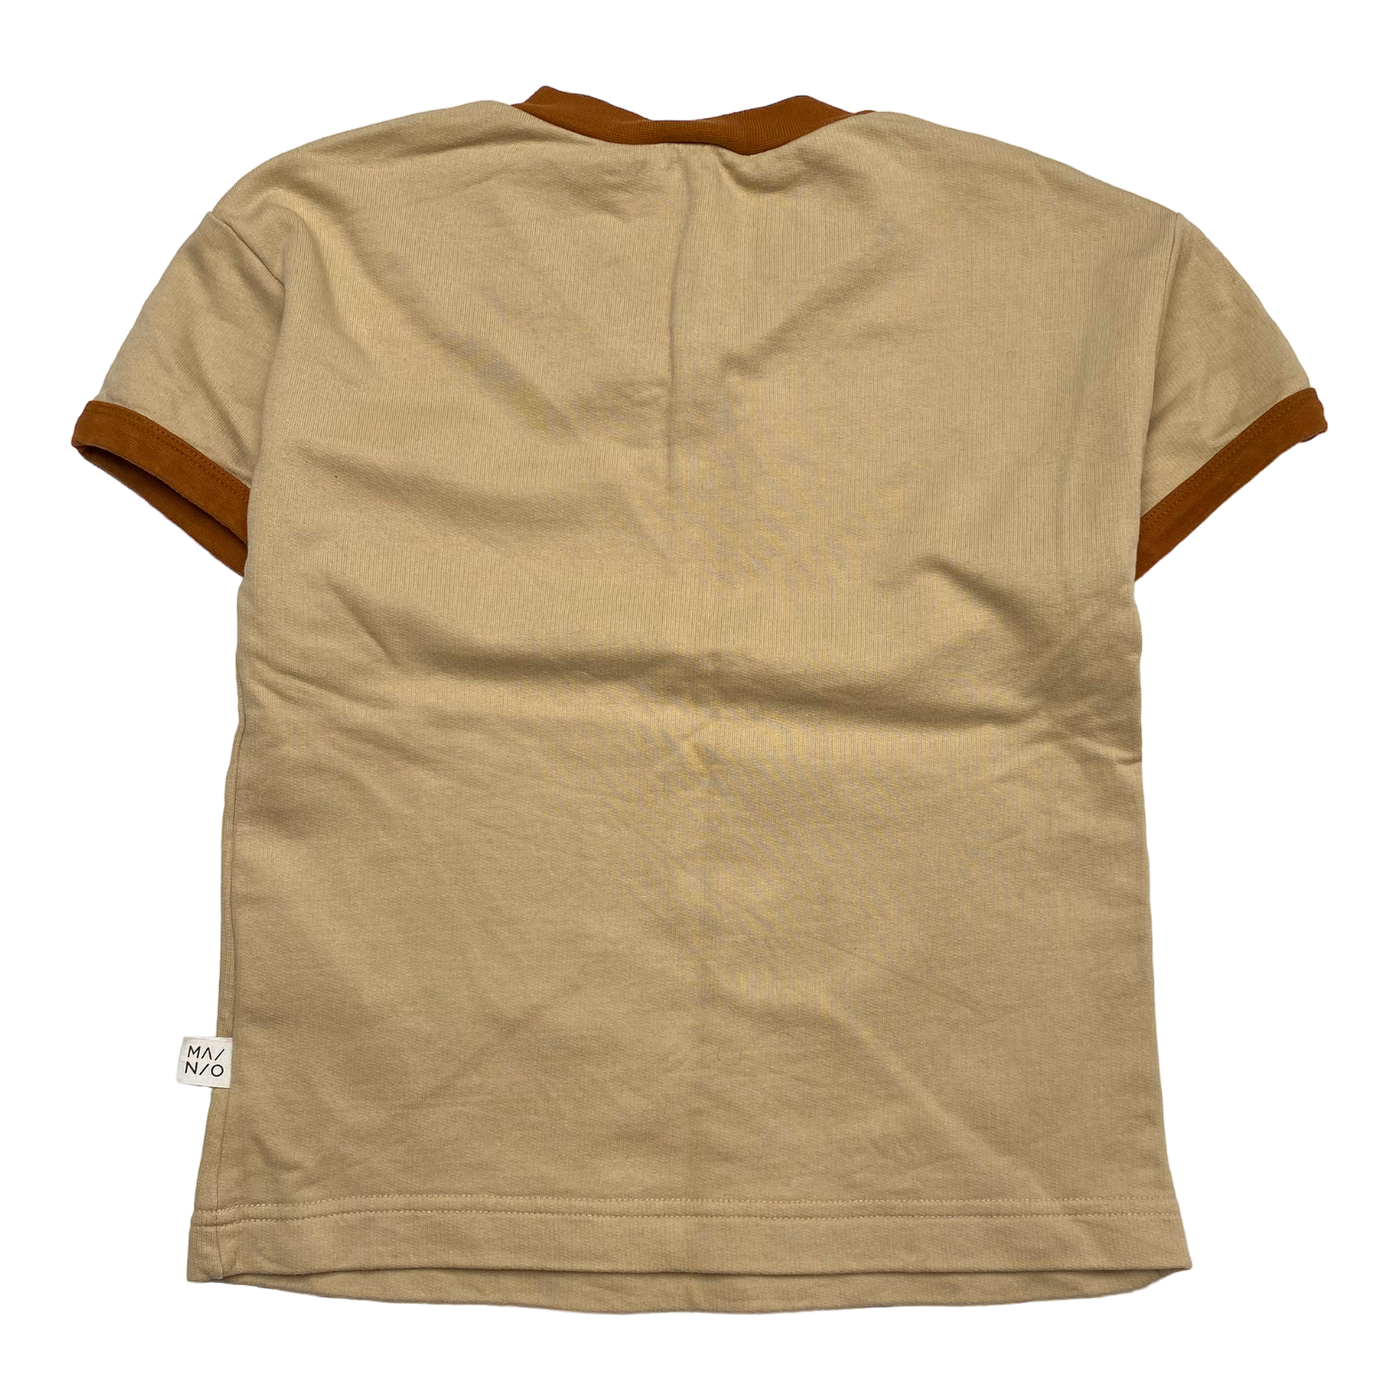 Mainio sweatshirt, wheat | 110/116cm